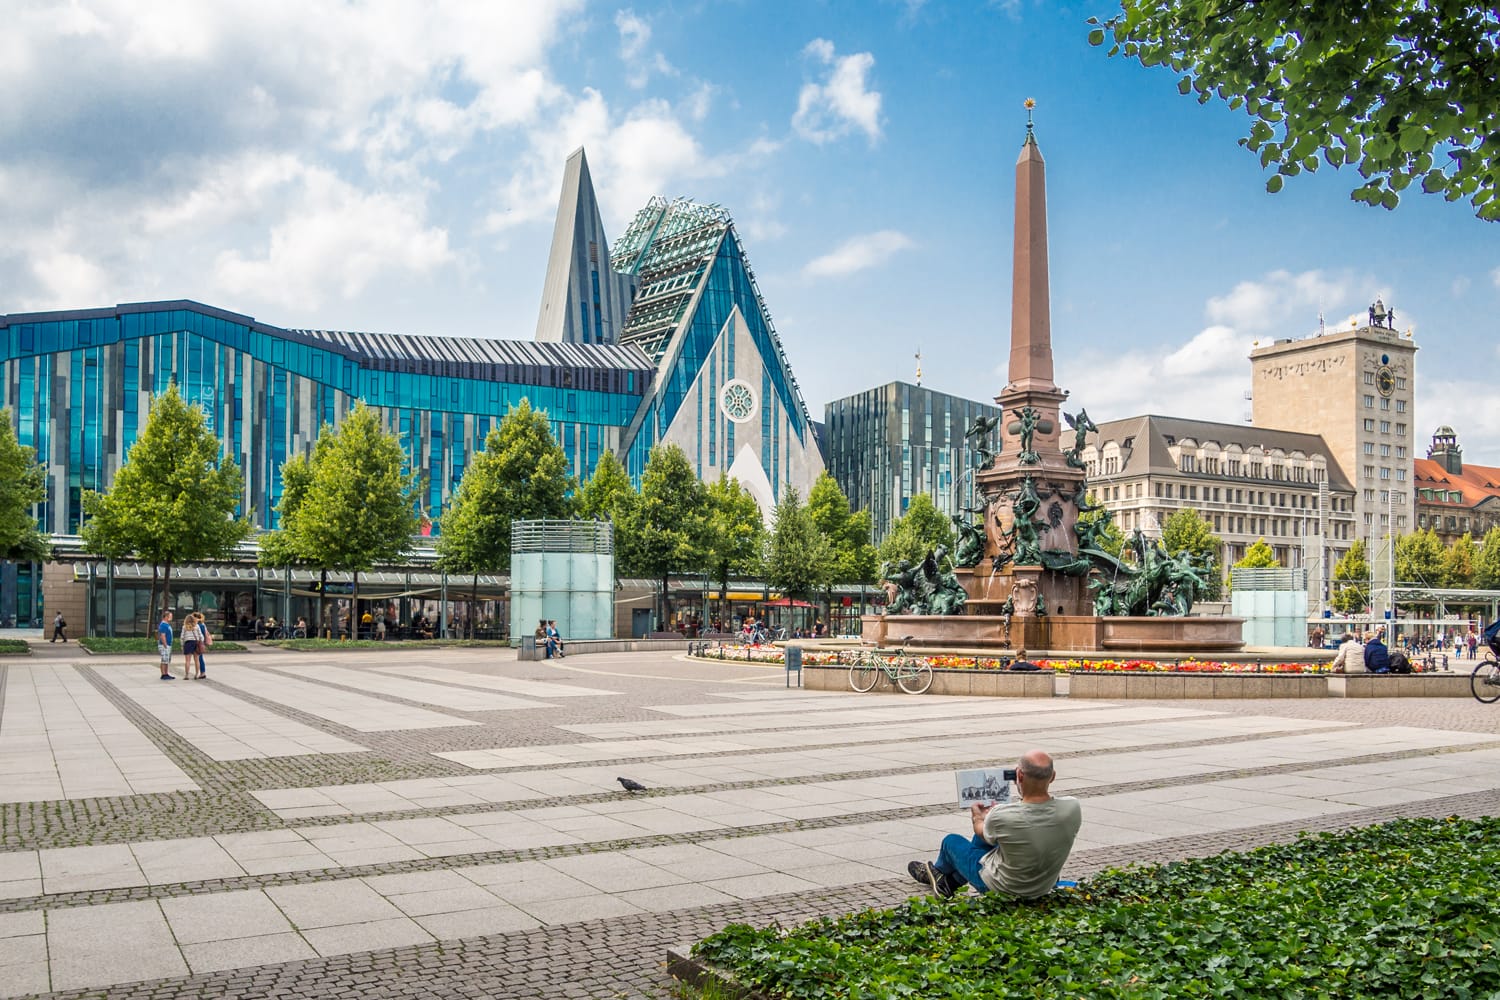 Augustusplatz in Leipzig, Germany